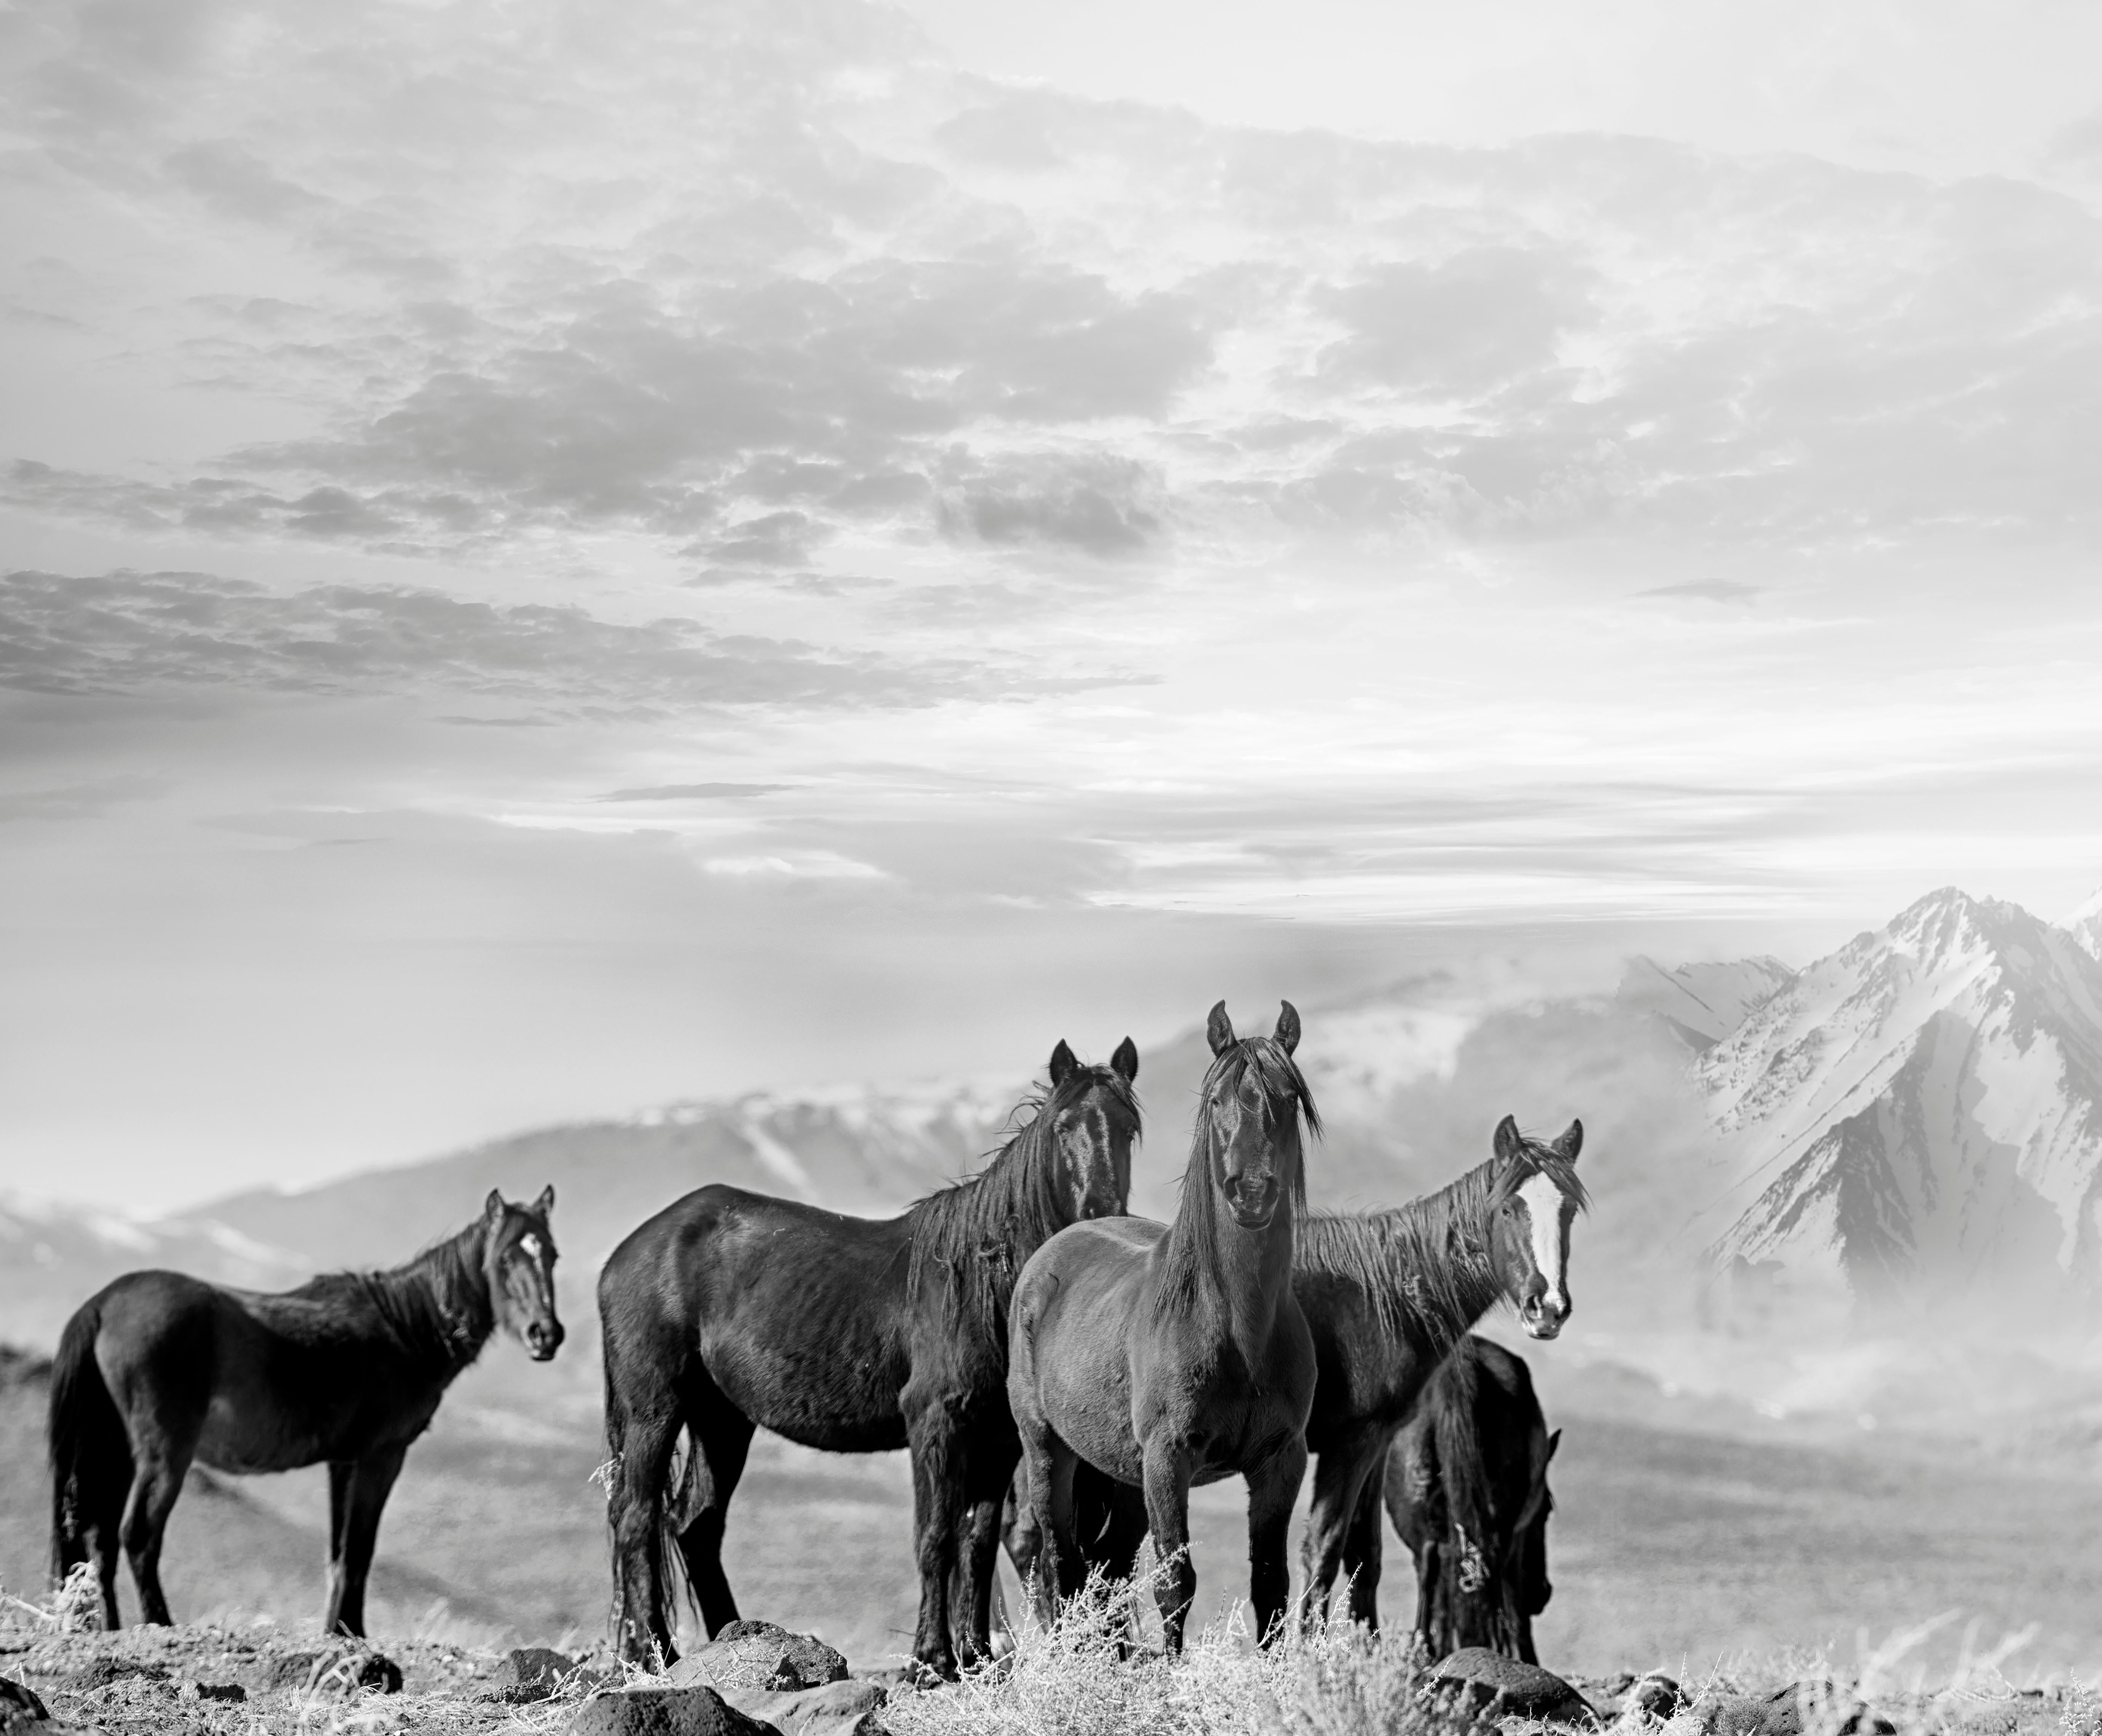 Black and White Photograph Shane Russeck - High Sierra Mustangs 40x60, Photographie en noir et blanc, Photographie de chevaux sauvages 